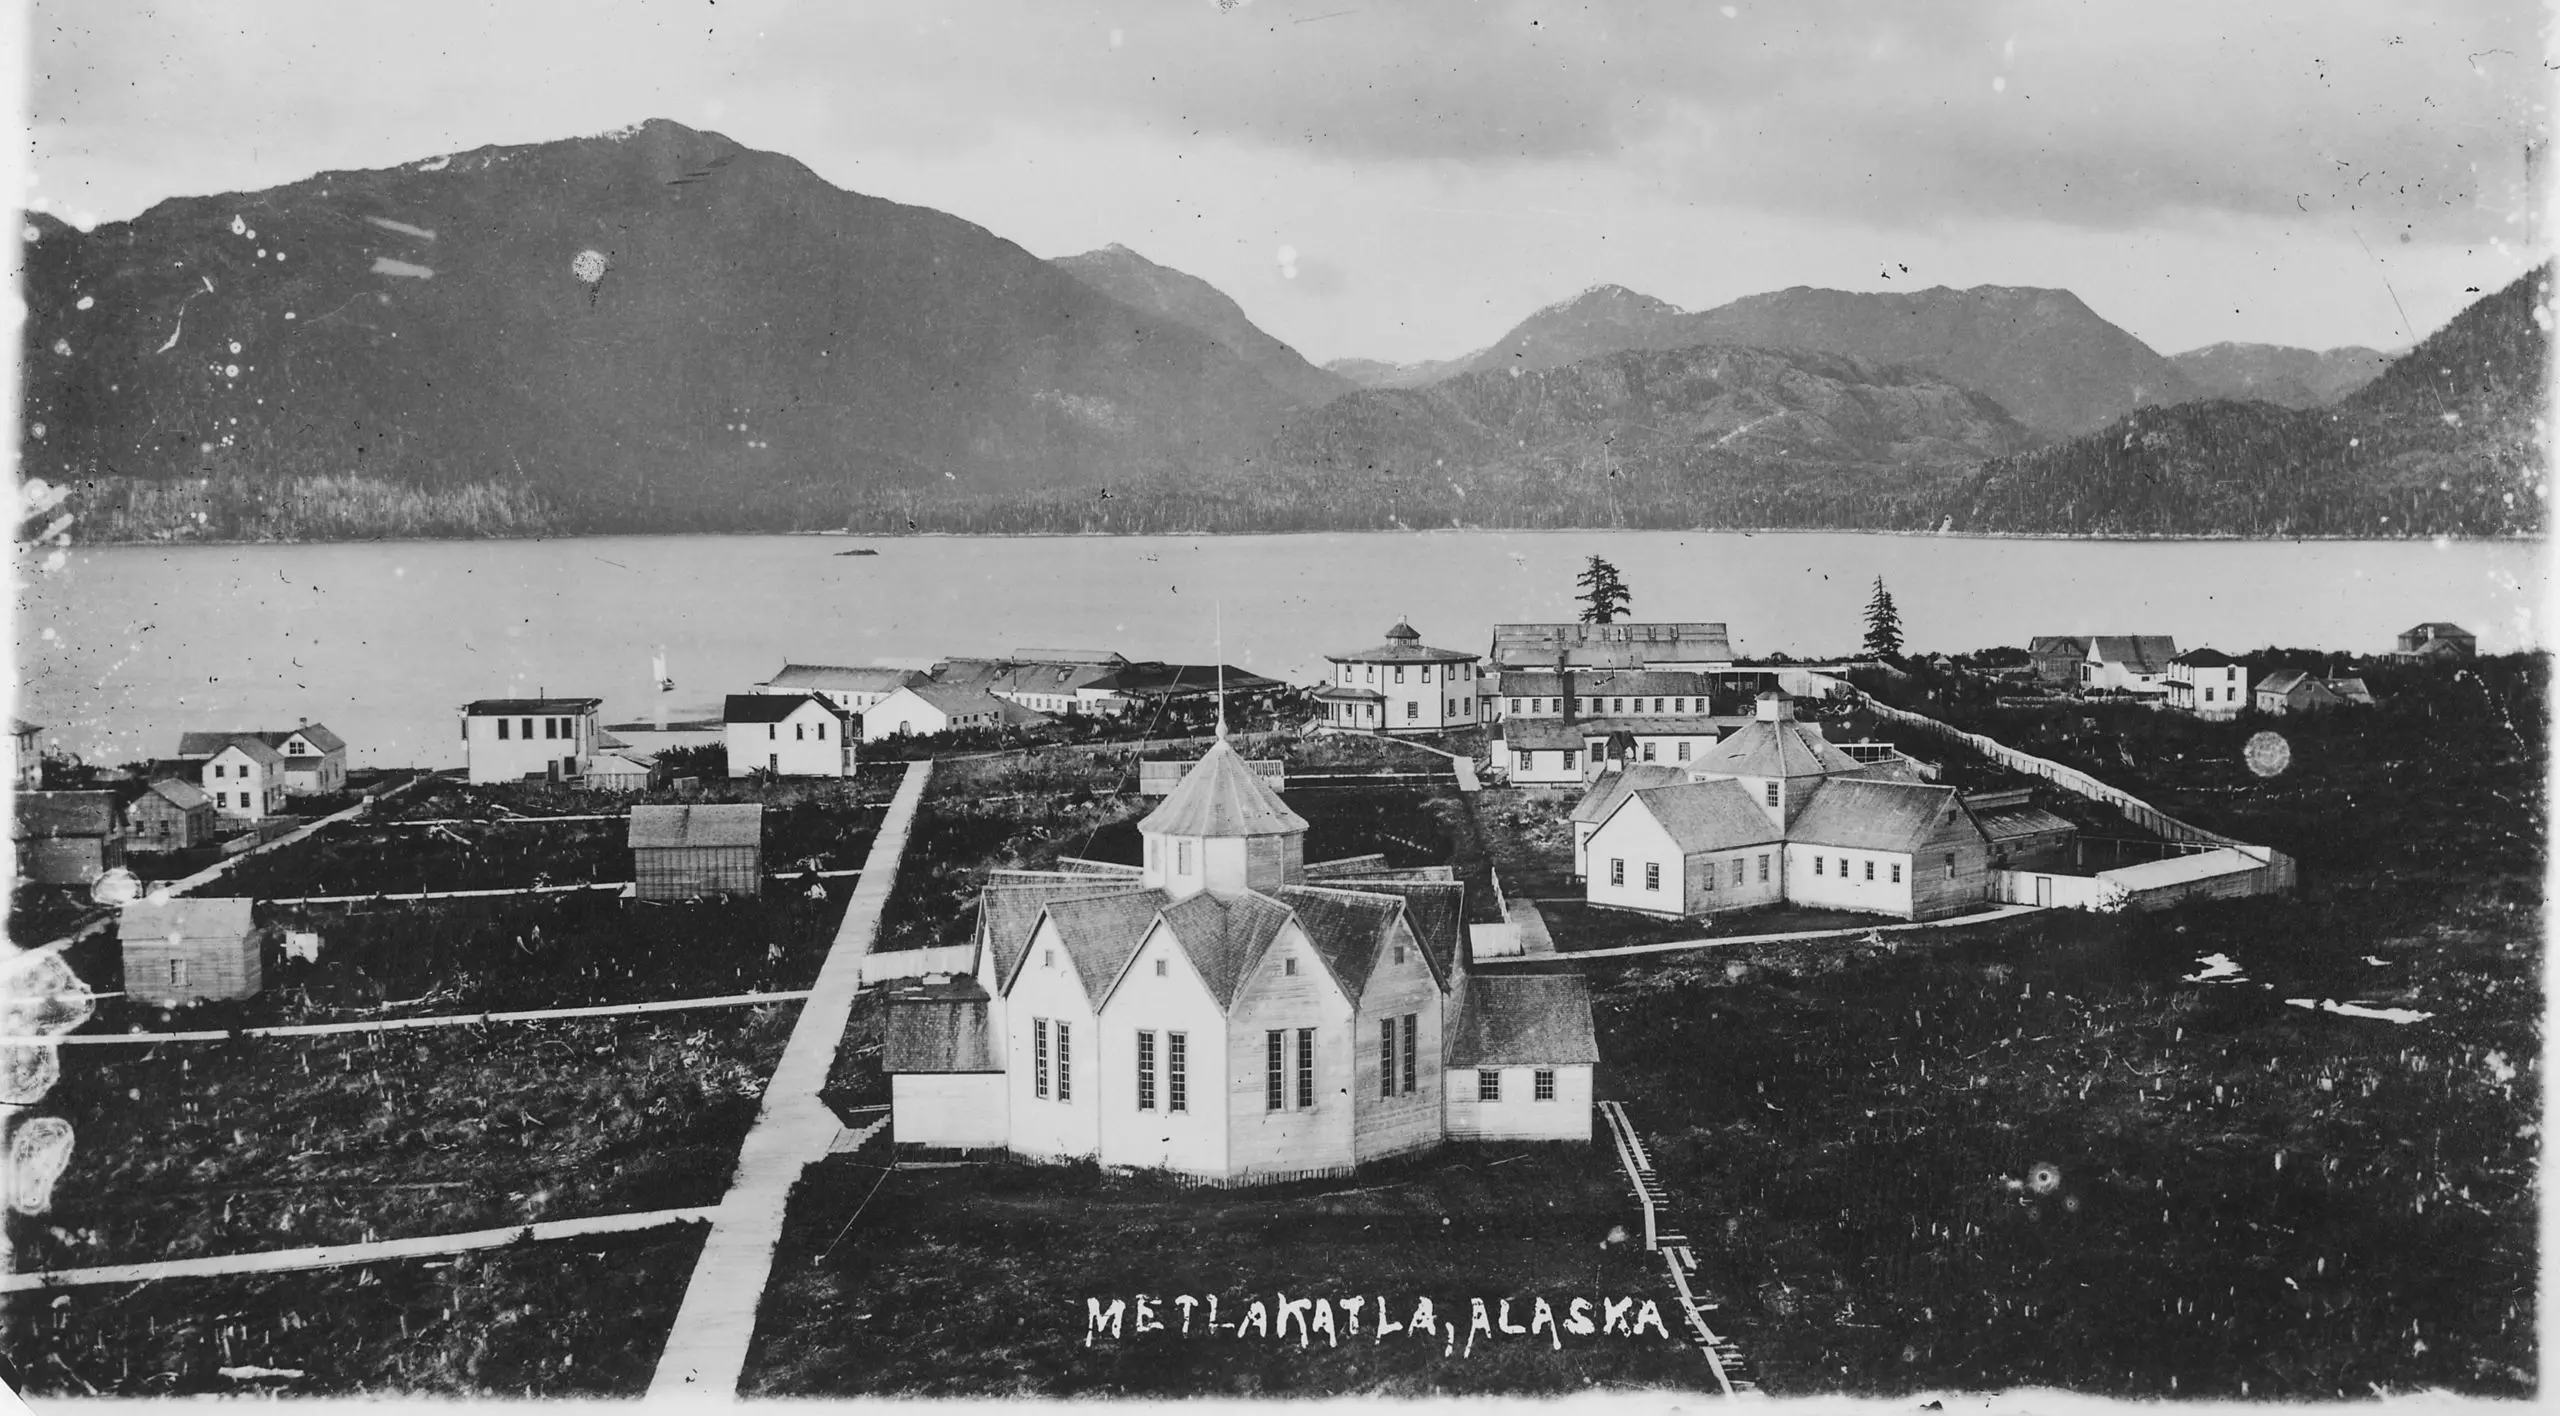 The Tsimshian community in Metlakahtla in 1889